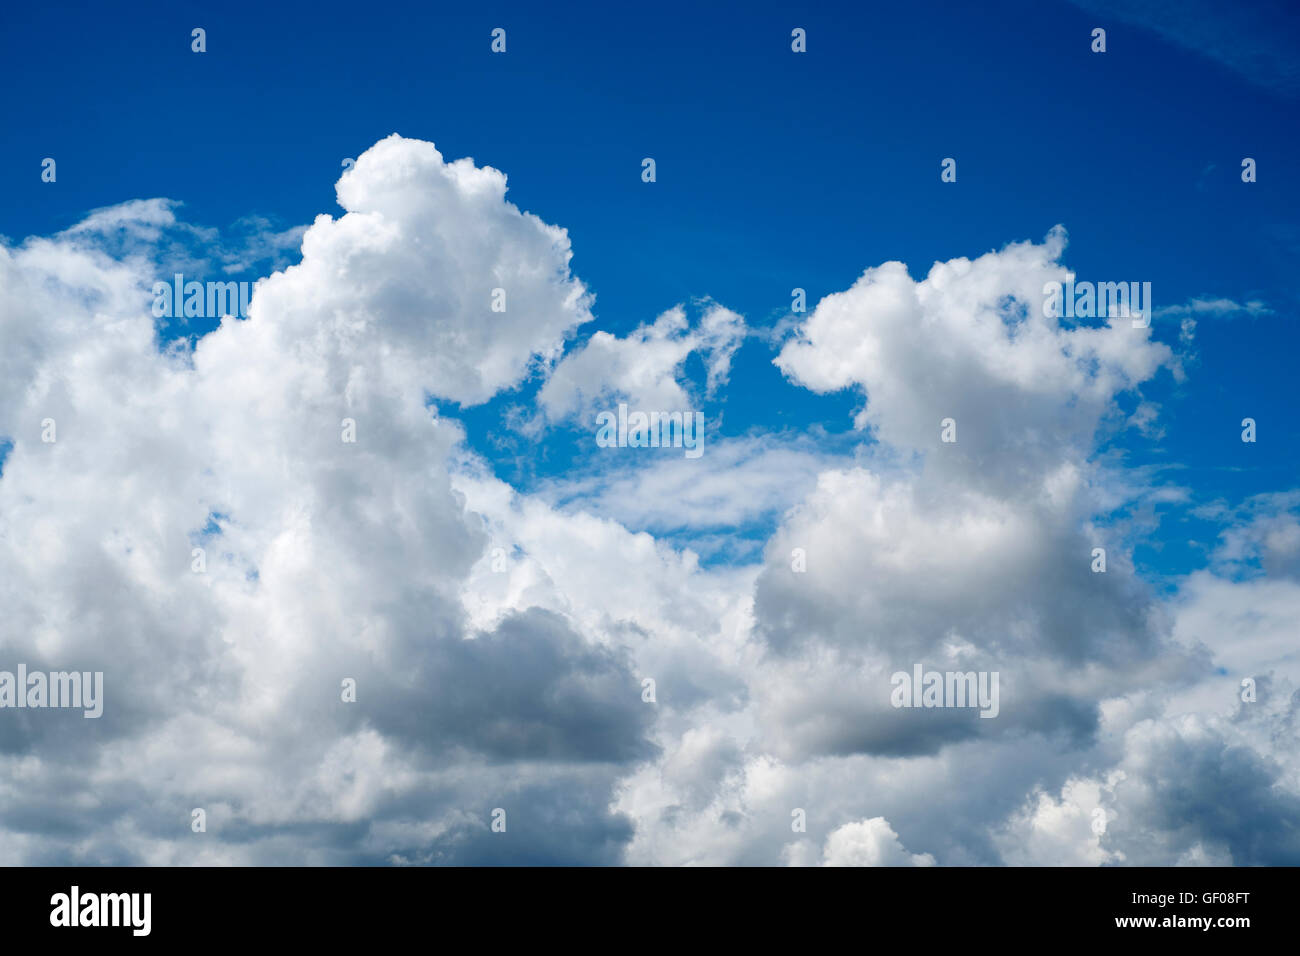 Cumulonimbus cloud formations in the sky. UK. Stock Photo